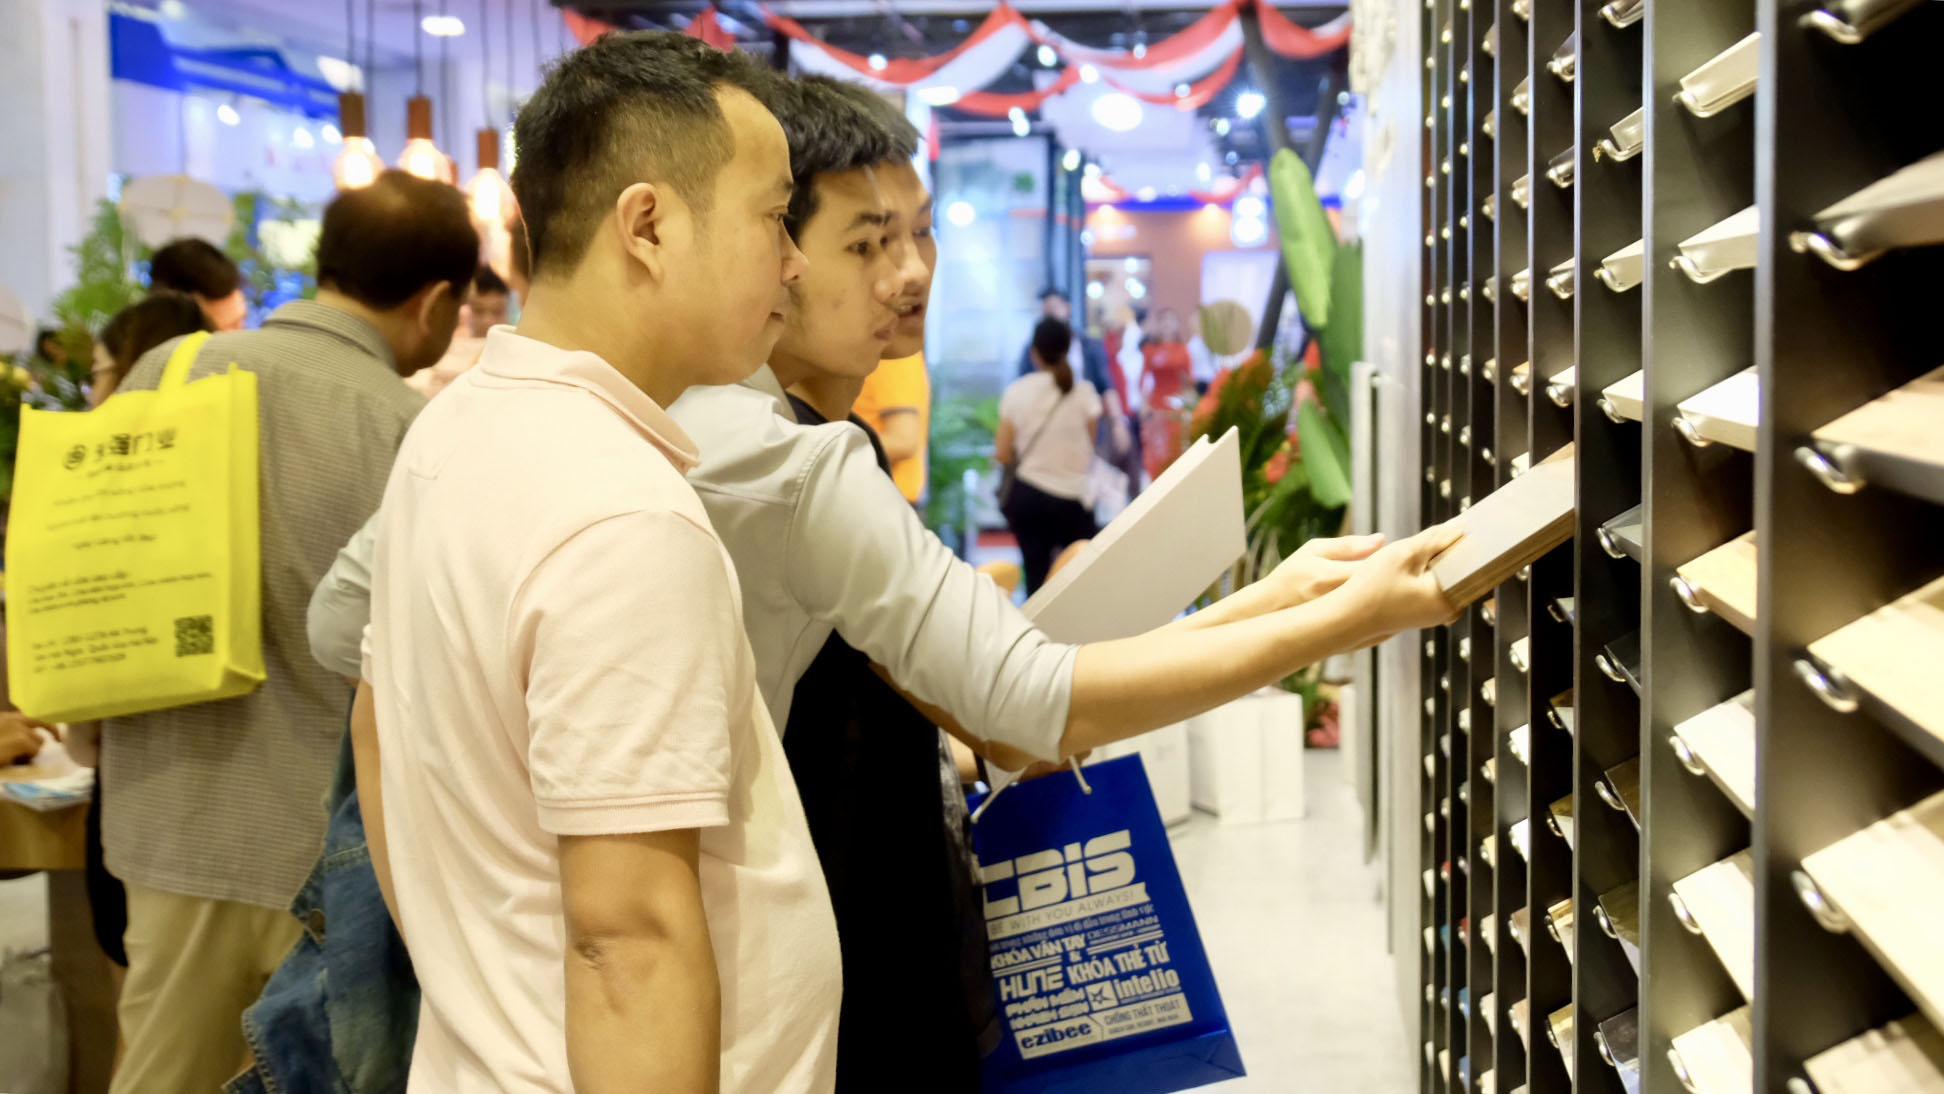 Bộ sưu tập An Cường Trend Collection 2018 thu hút đông đảo khách hàng trong ngày khai mạc VietBuild 2018 tại Hà Nội